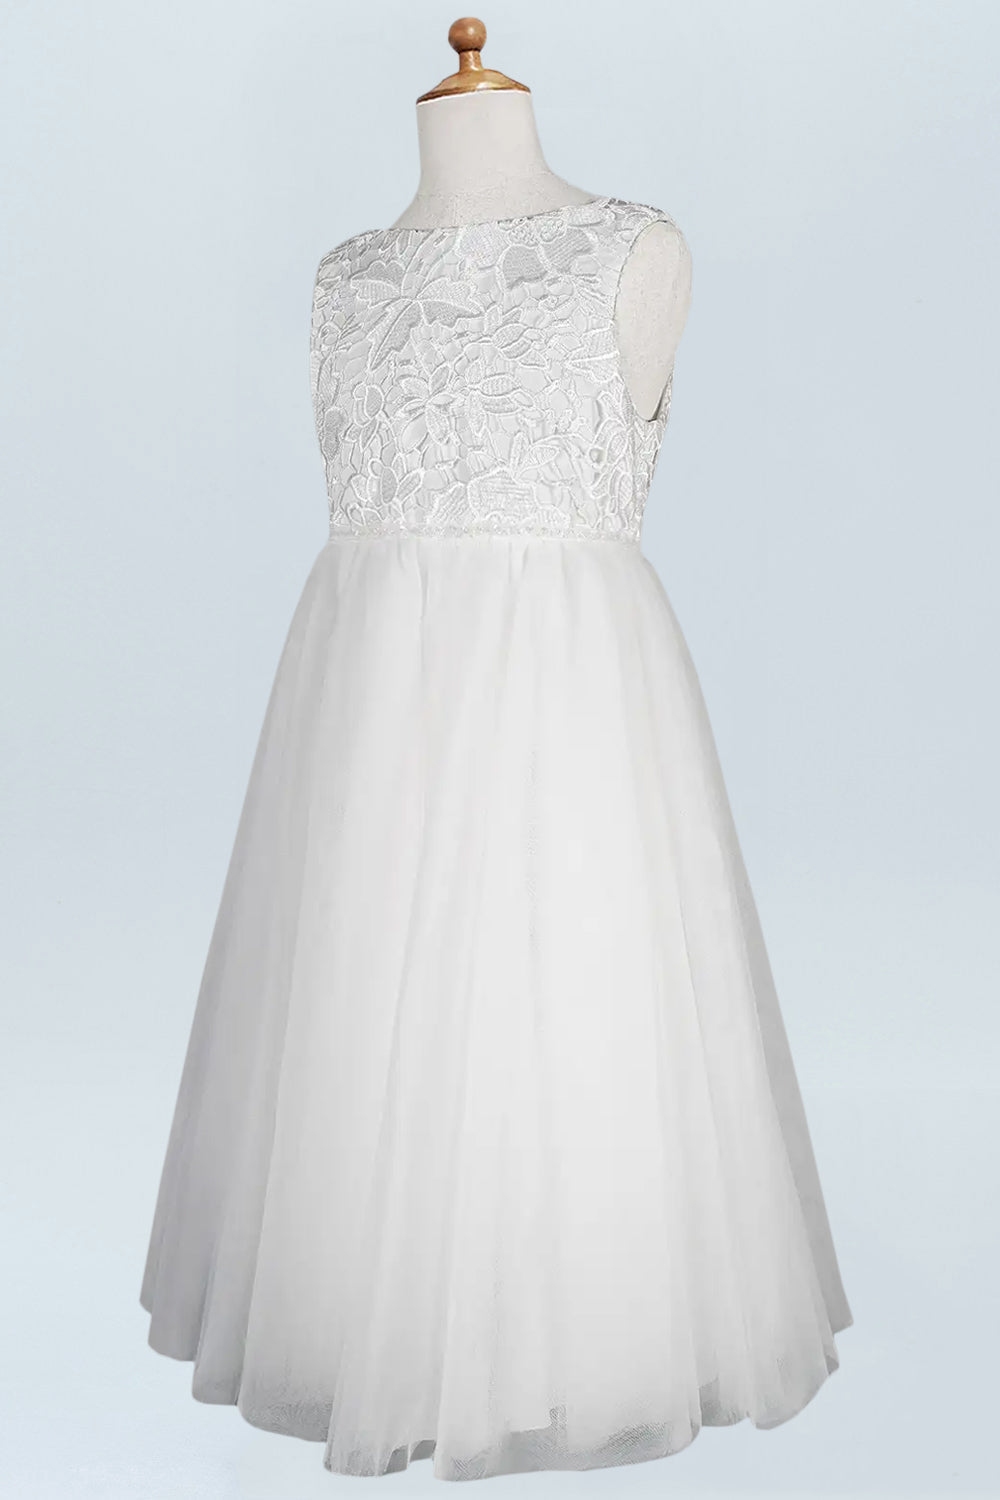 Lace A-Line Scoop Neck Half Sleeves Floweer Girl Dress-M500124